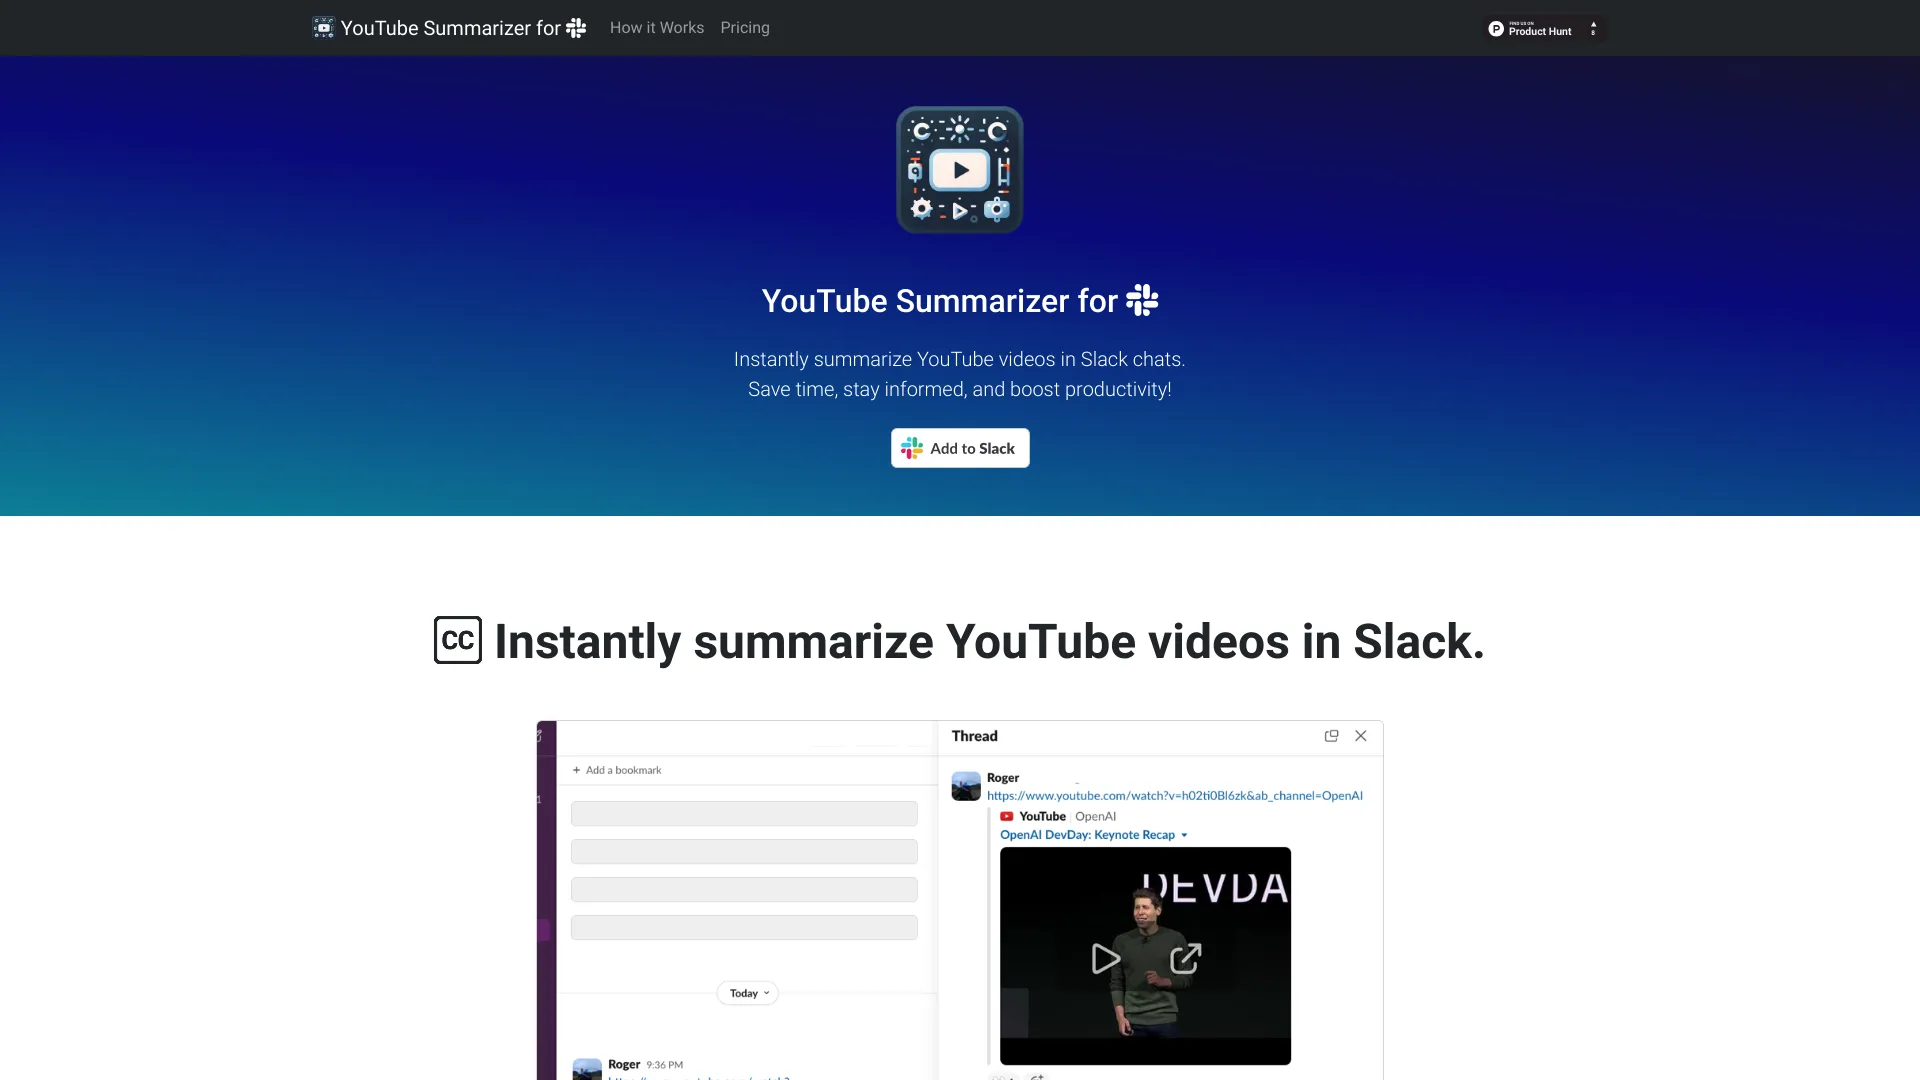 YouTube Summarizer for Slack